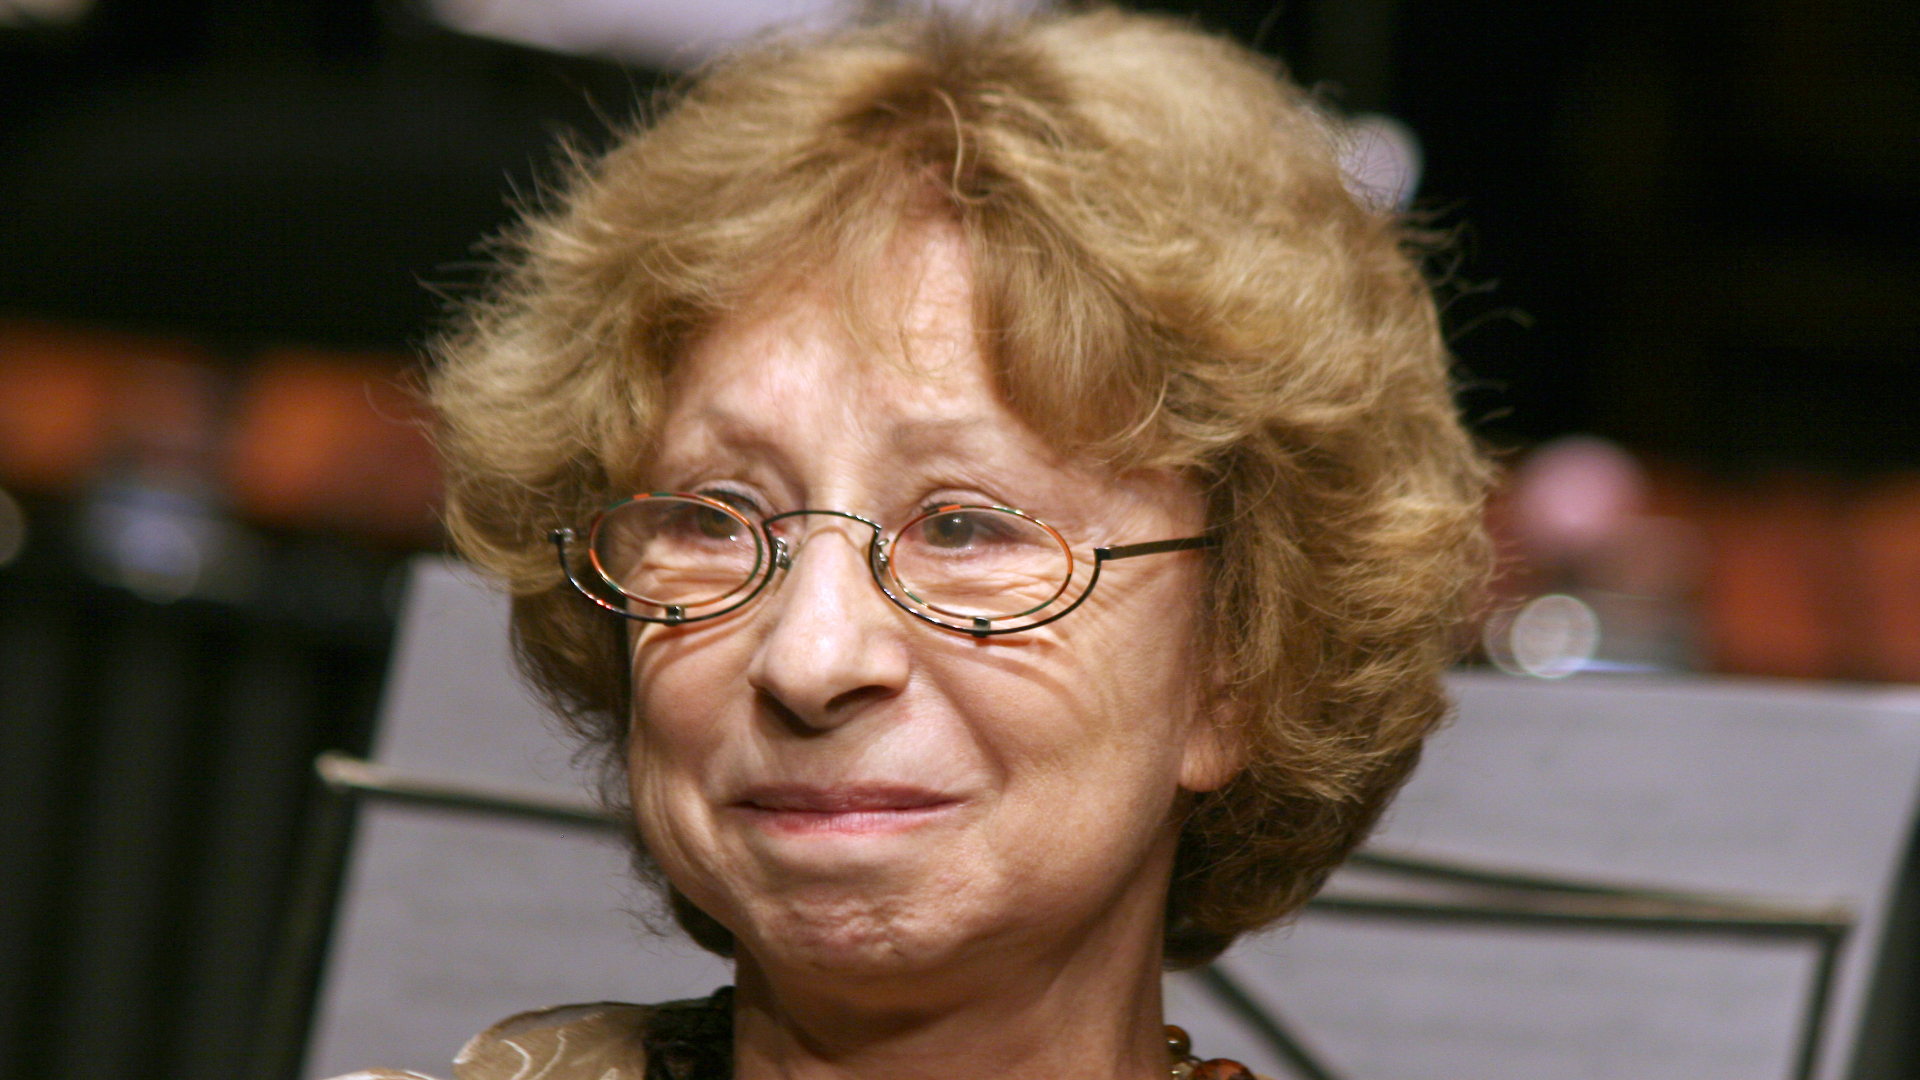 Лия Ахеджакова